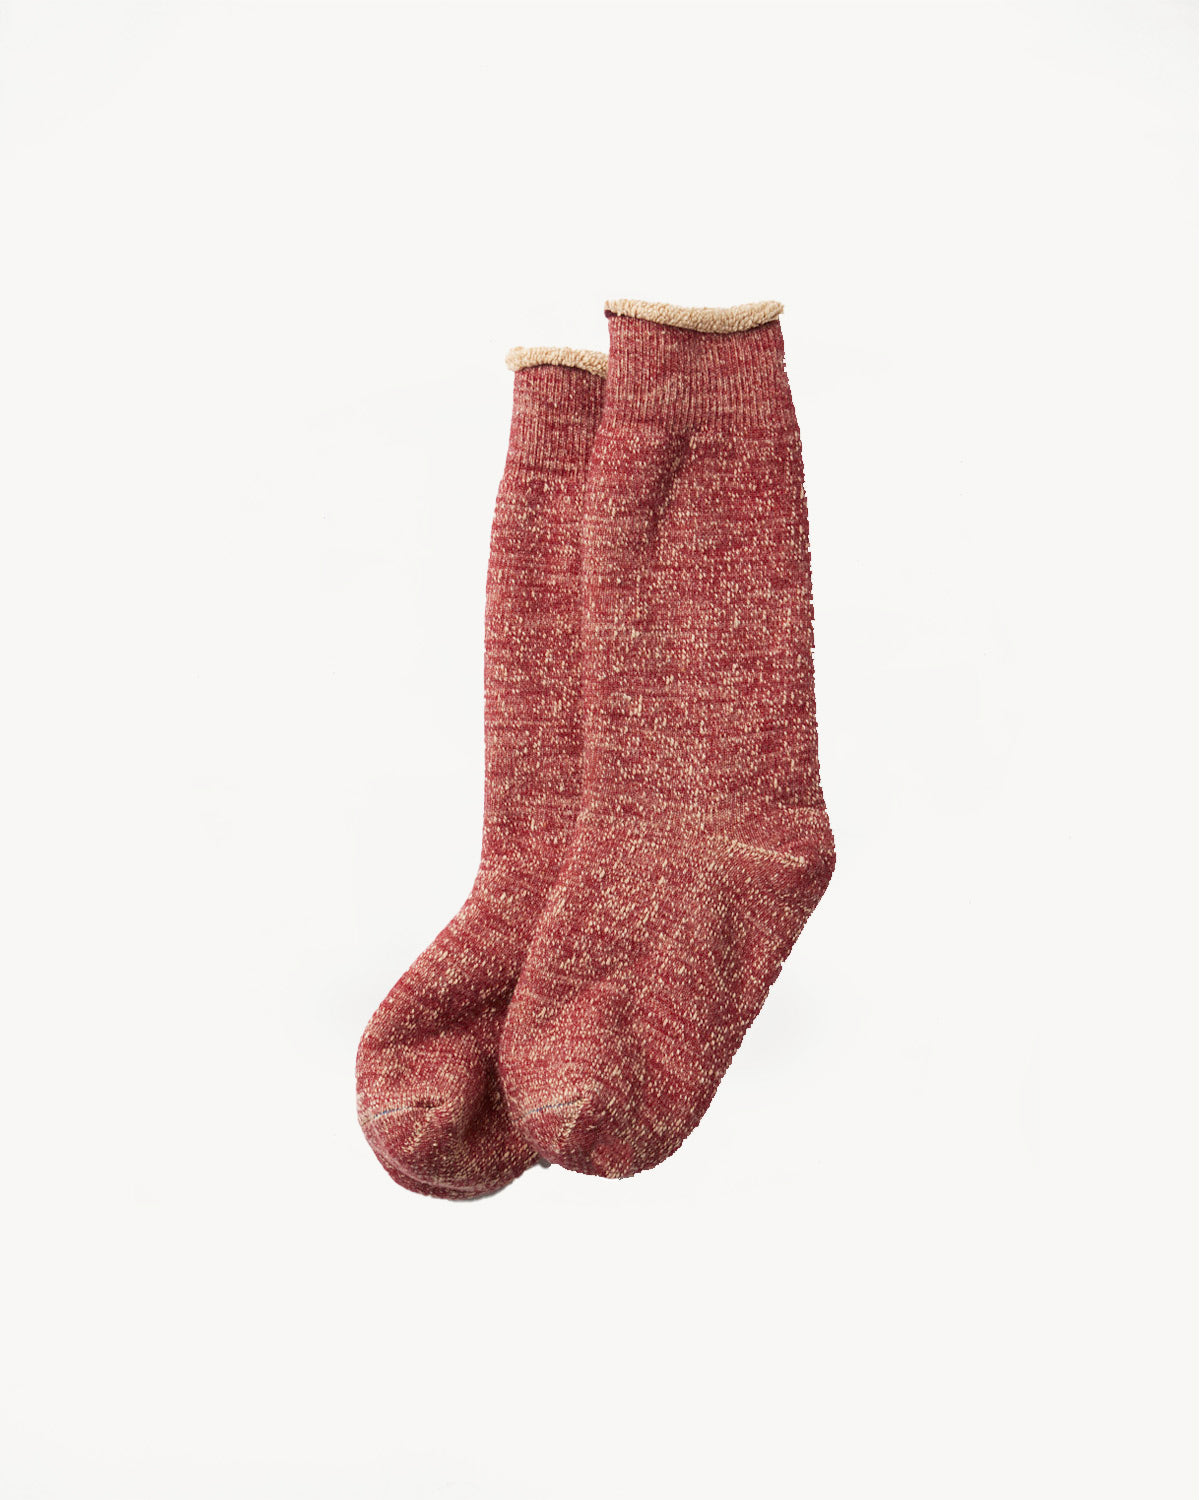 R1001-BR - Double Face Crew Socks Merino Wool OG - Dark Red, Brown